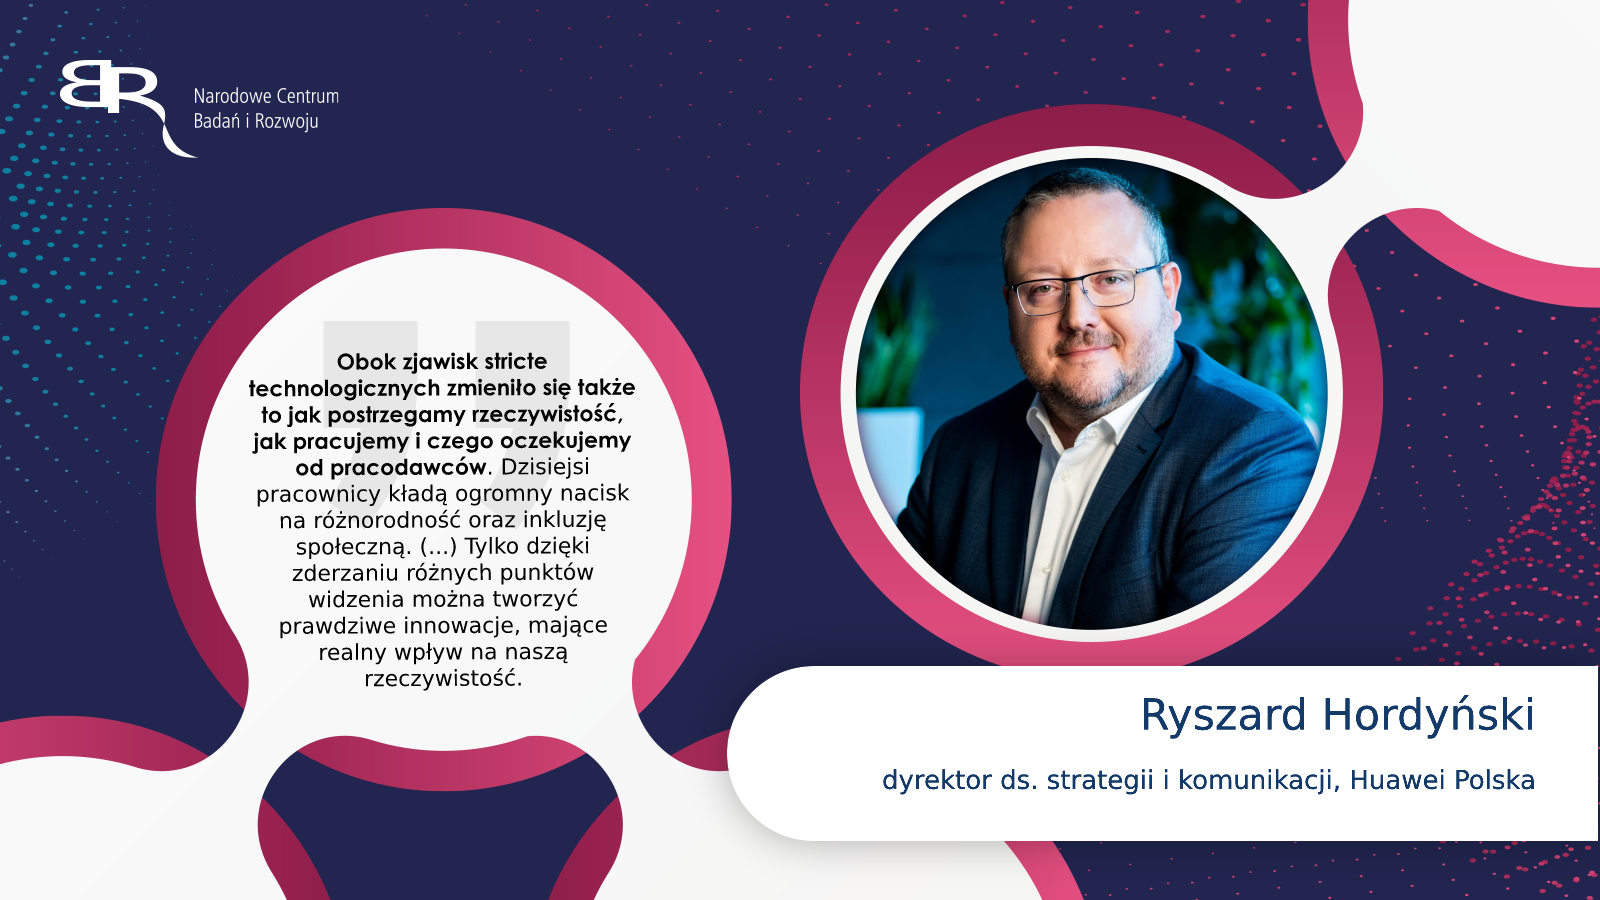 Ryszard Hordyński - dyrektor ds. strategii i komunikacji, Huawei Polska